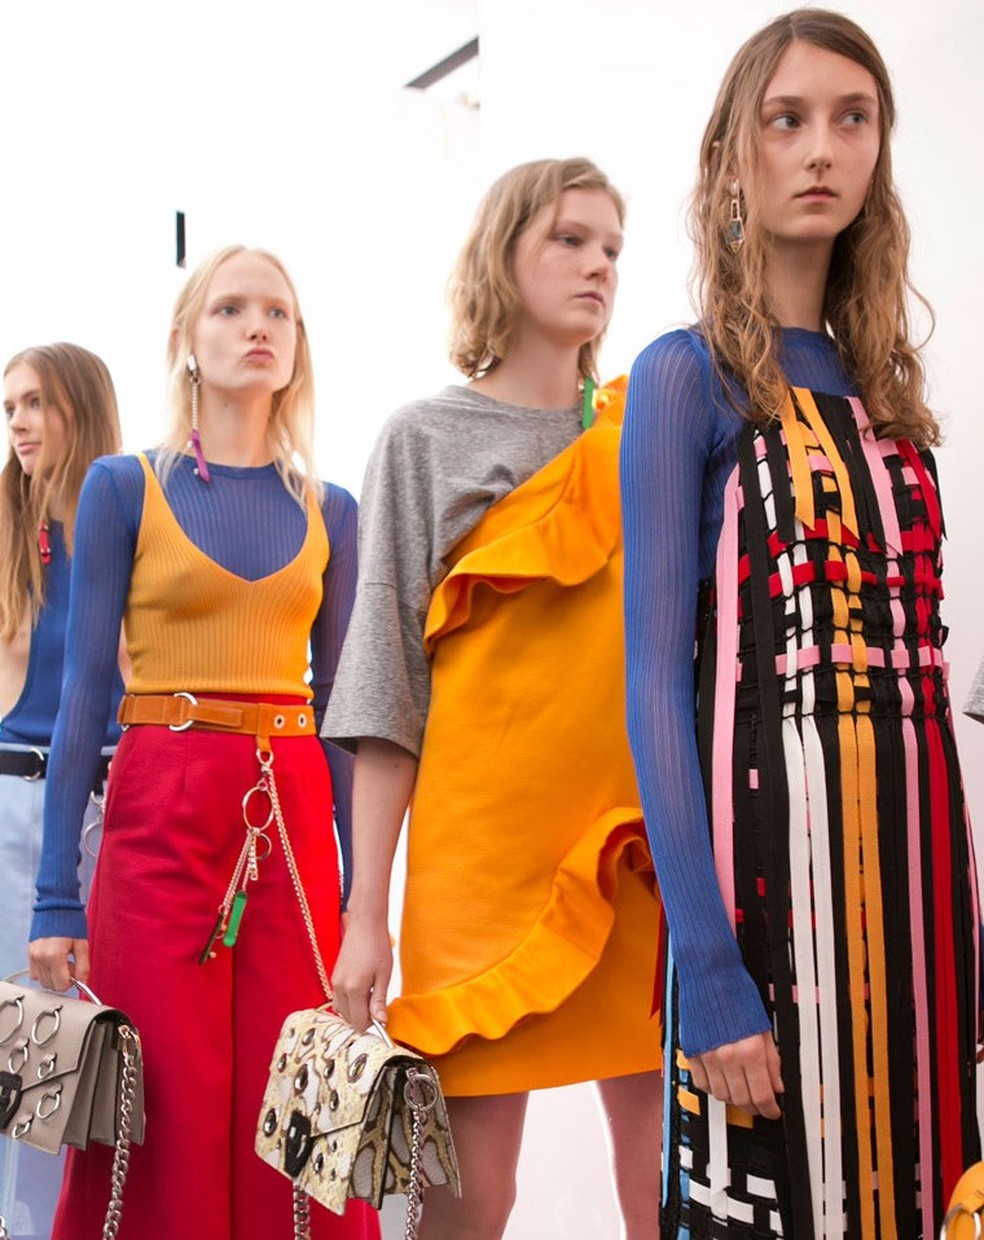 Camisa por baixo de vestidos para aliviar o decote é tendência em Milão |  Tendência | Vogue